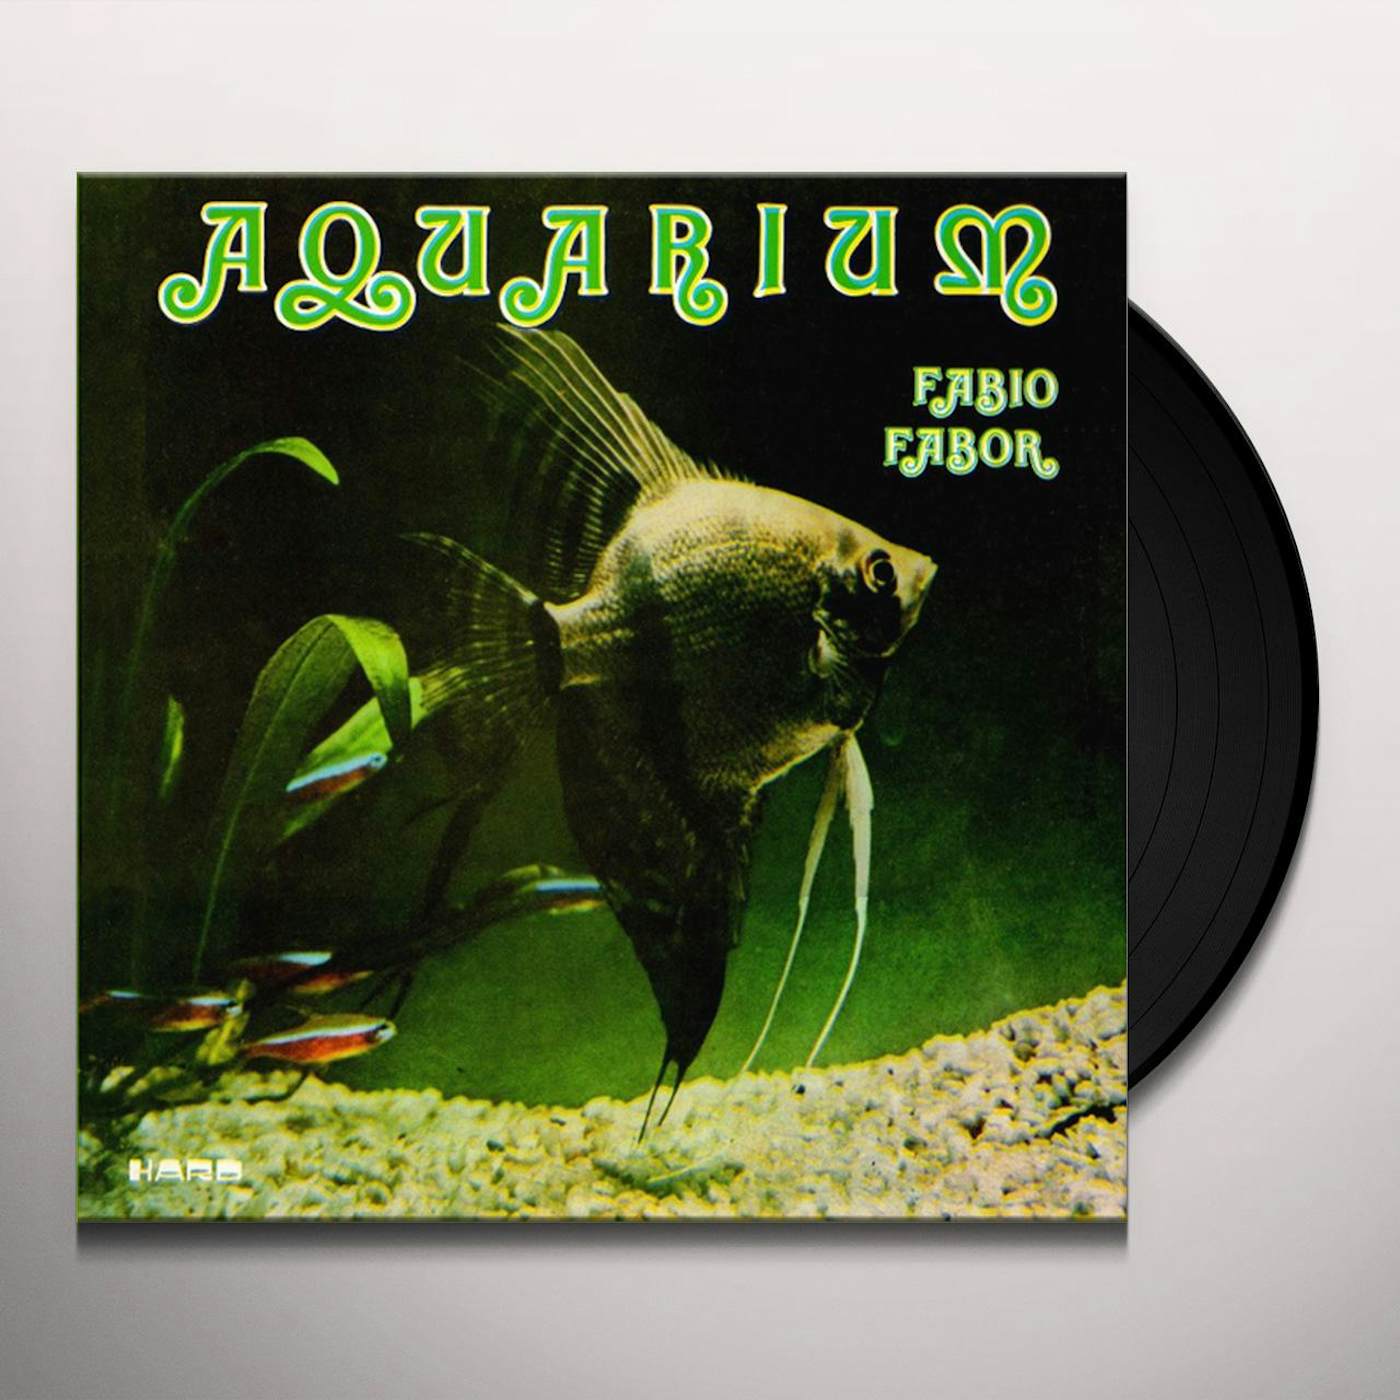 Fabio Fabor Aquarium Vinyl Record